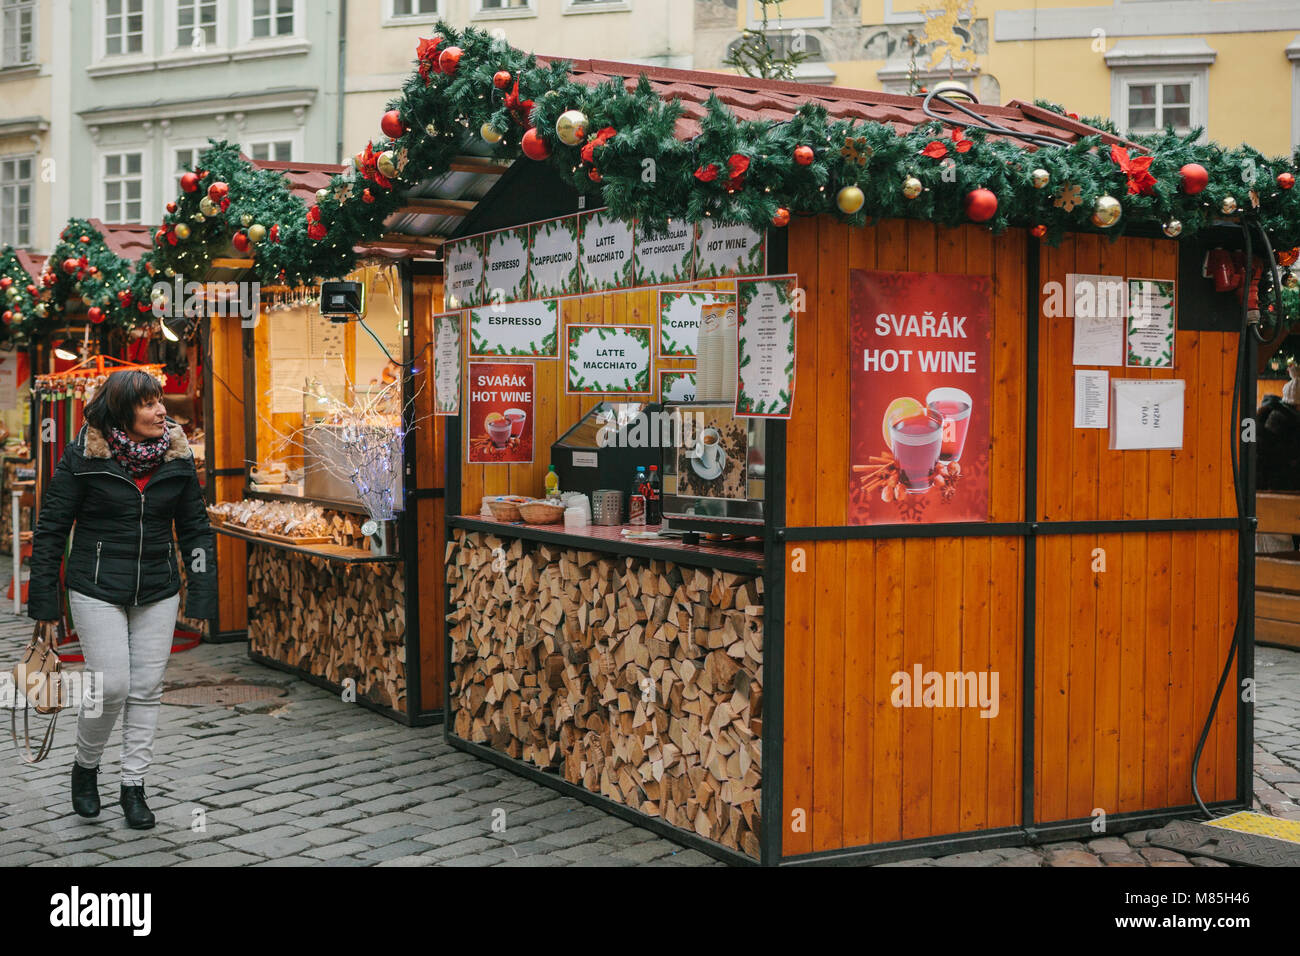 Prague, le 13 décembre 2016 : la Place de la Vieille Ville à Prague, le Jour de Noël. Marché de Noël de la place principale de la ville. La femme regarde avec étonnement Banque D'Images